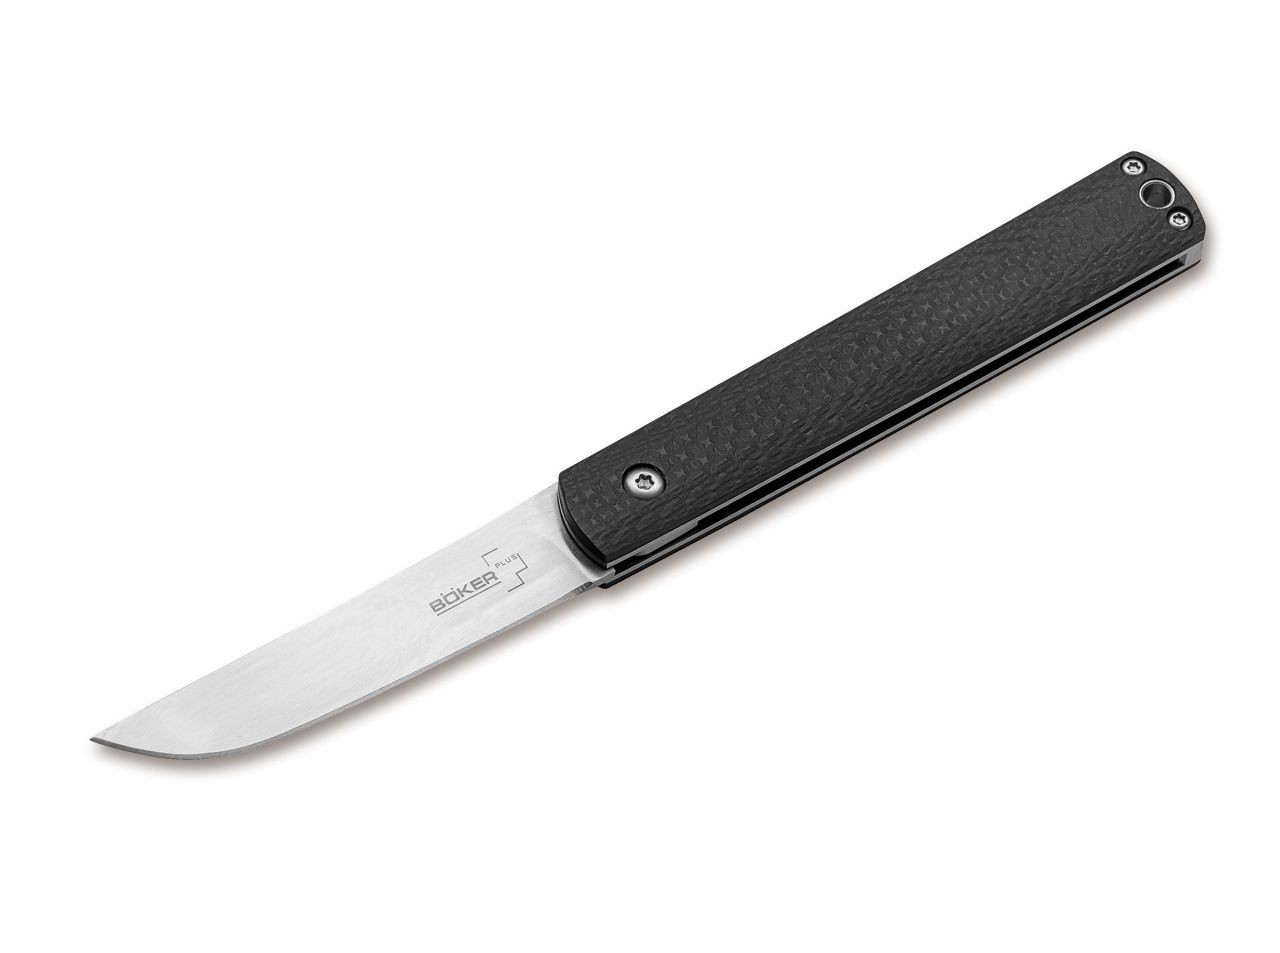 Нож Boker Wasabi CF складной сталь 440C рукоять сталь карбон - фото 1